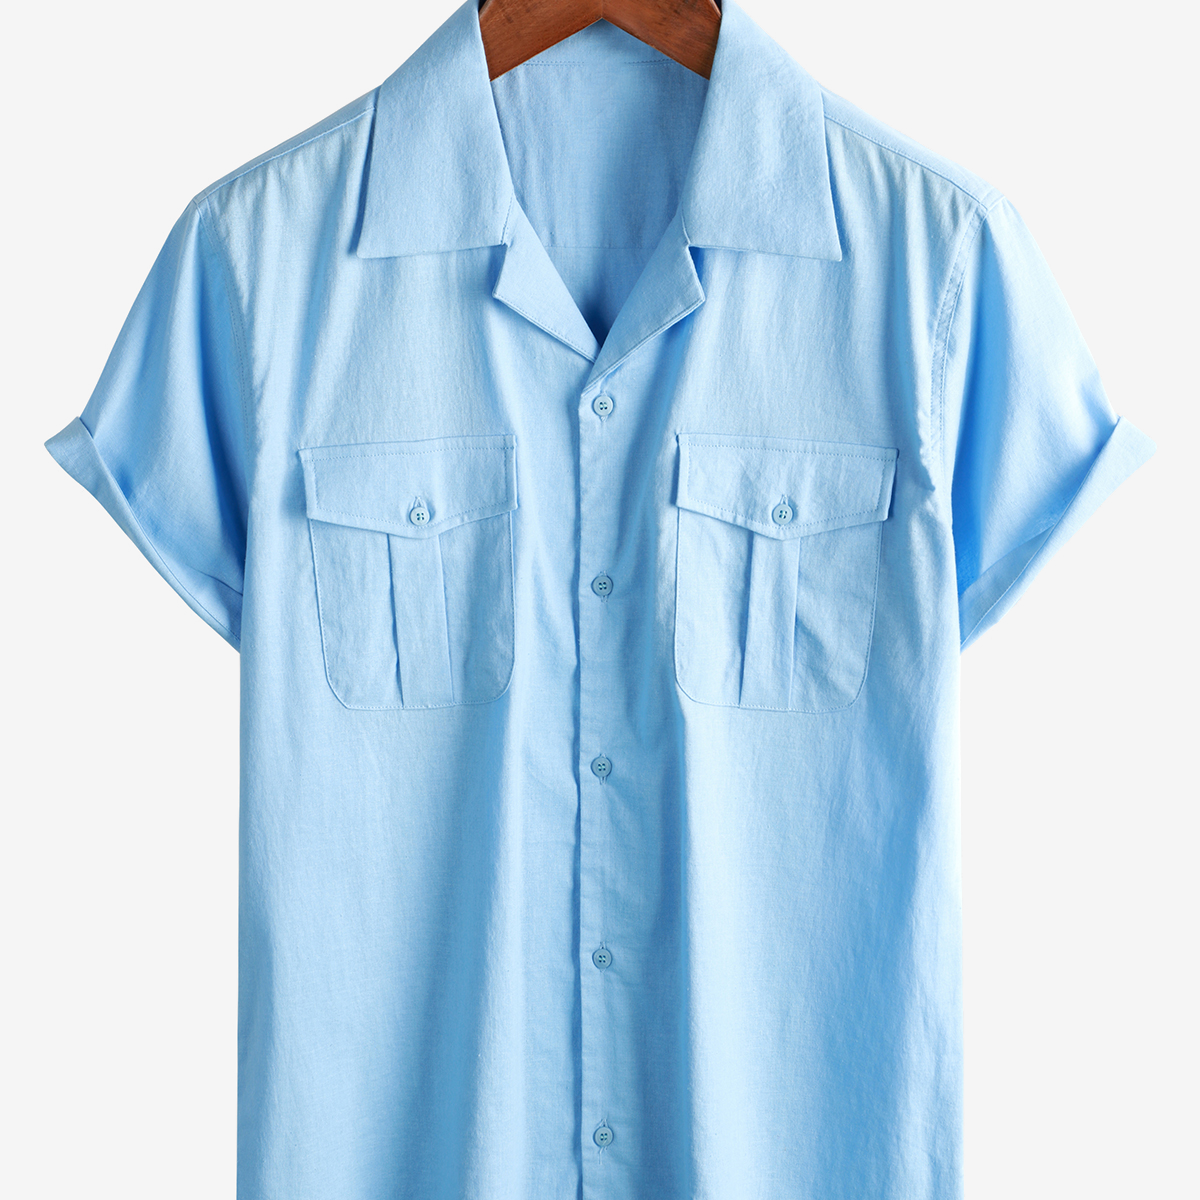 Men's Hawaiian Cotton Linen Pocket Cuban Beach Short Sleeve Summer Button Camp Shirt